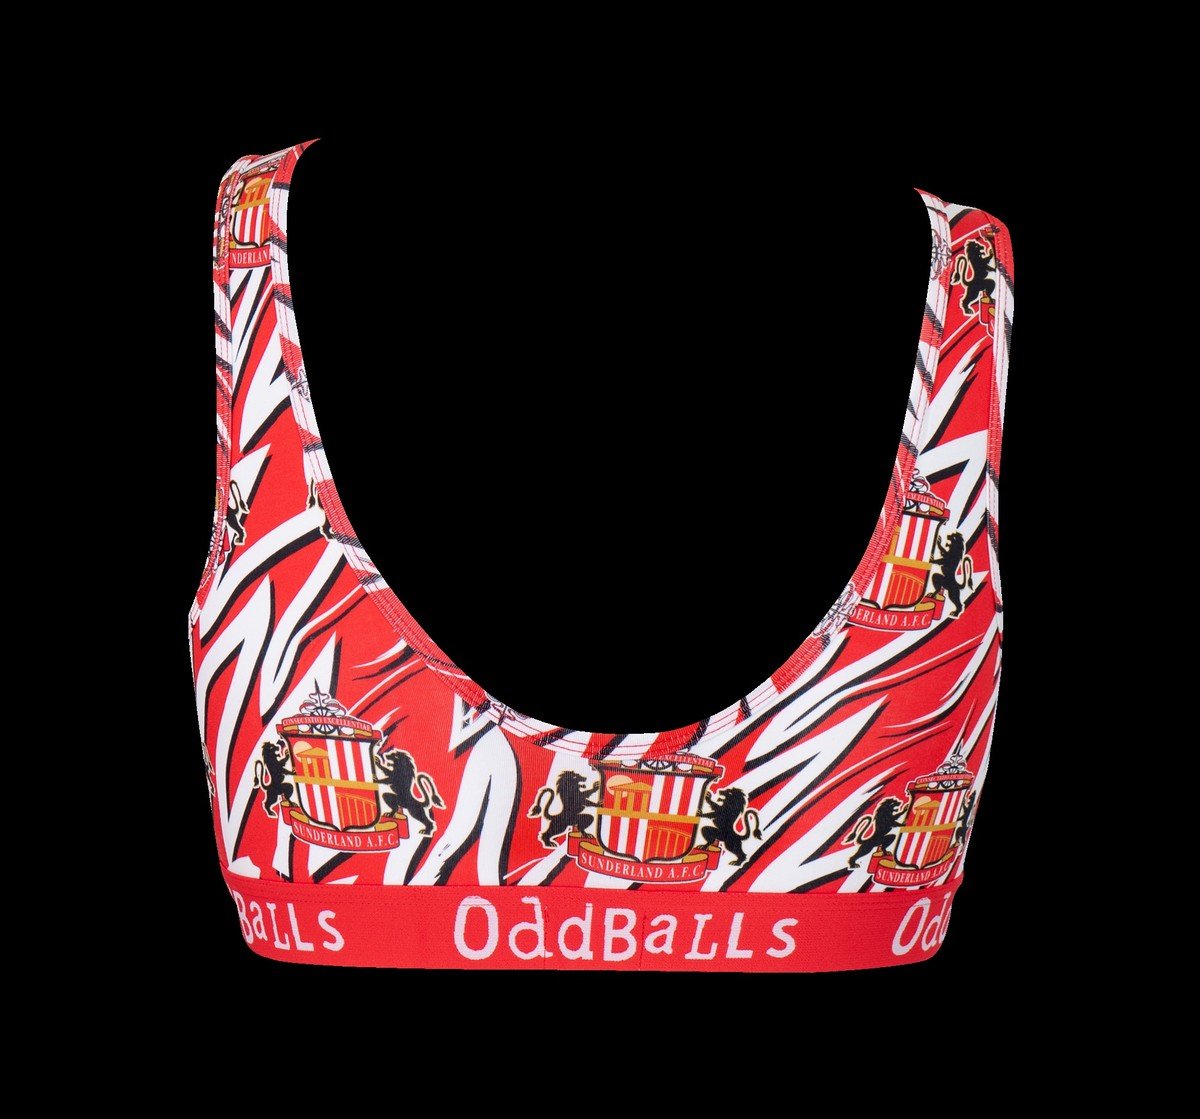 Buy the OddBalls Zebra Bralette online at Sunderland AFC Store